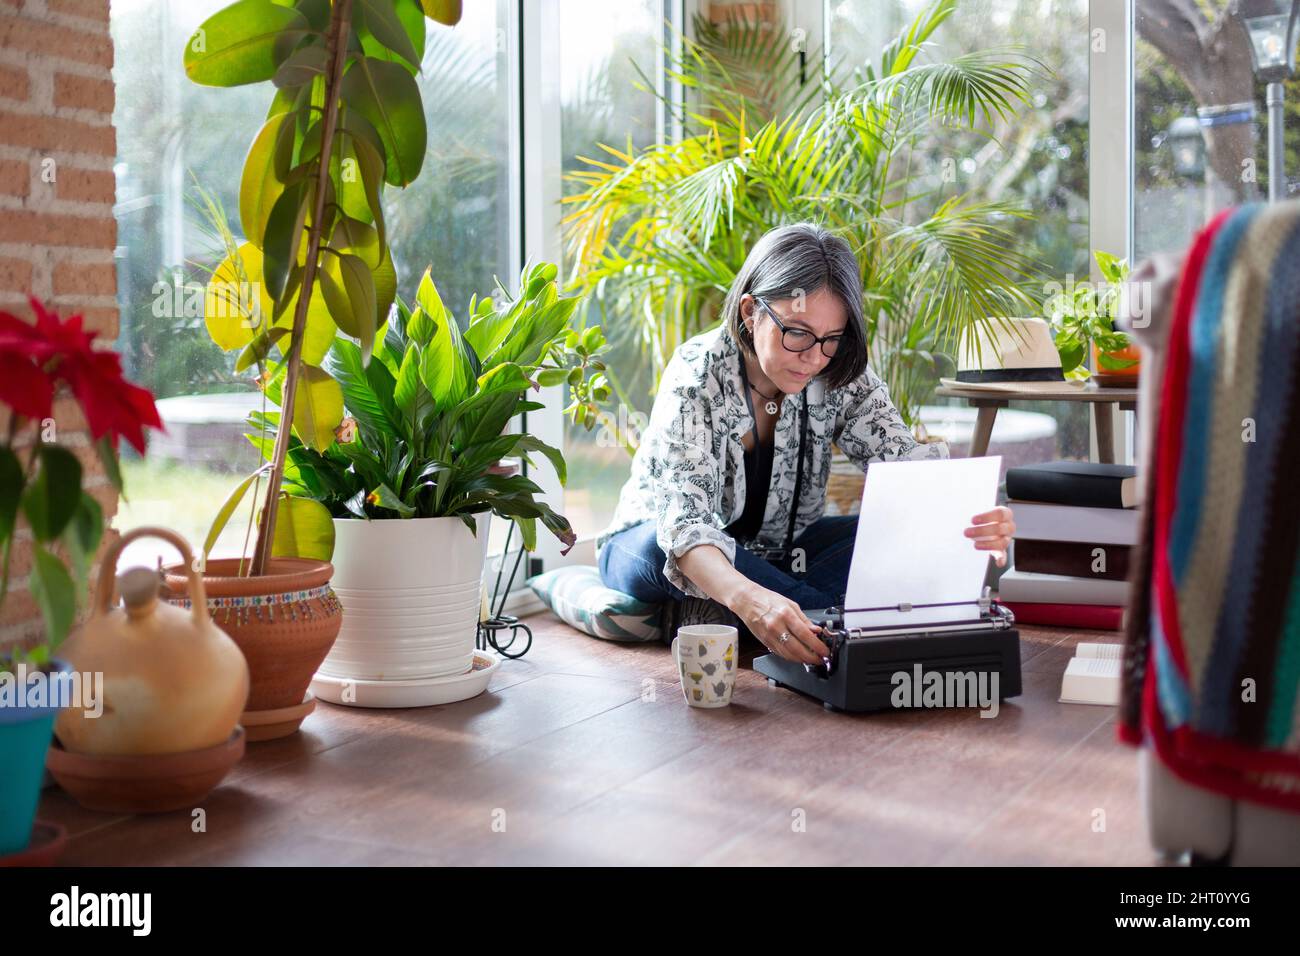 Femme adulte écrivaine mettant une feuille de papier vierge sur machine à écrire. Elle est à la maison. Banque D'Images